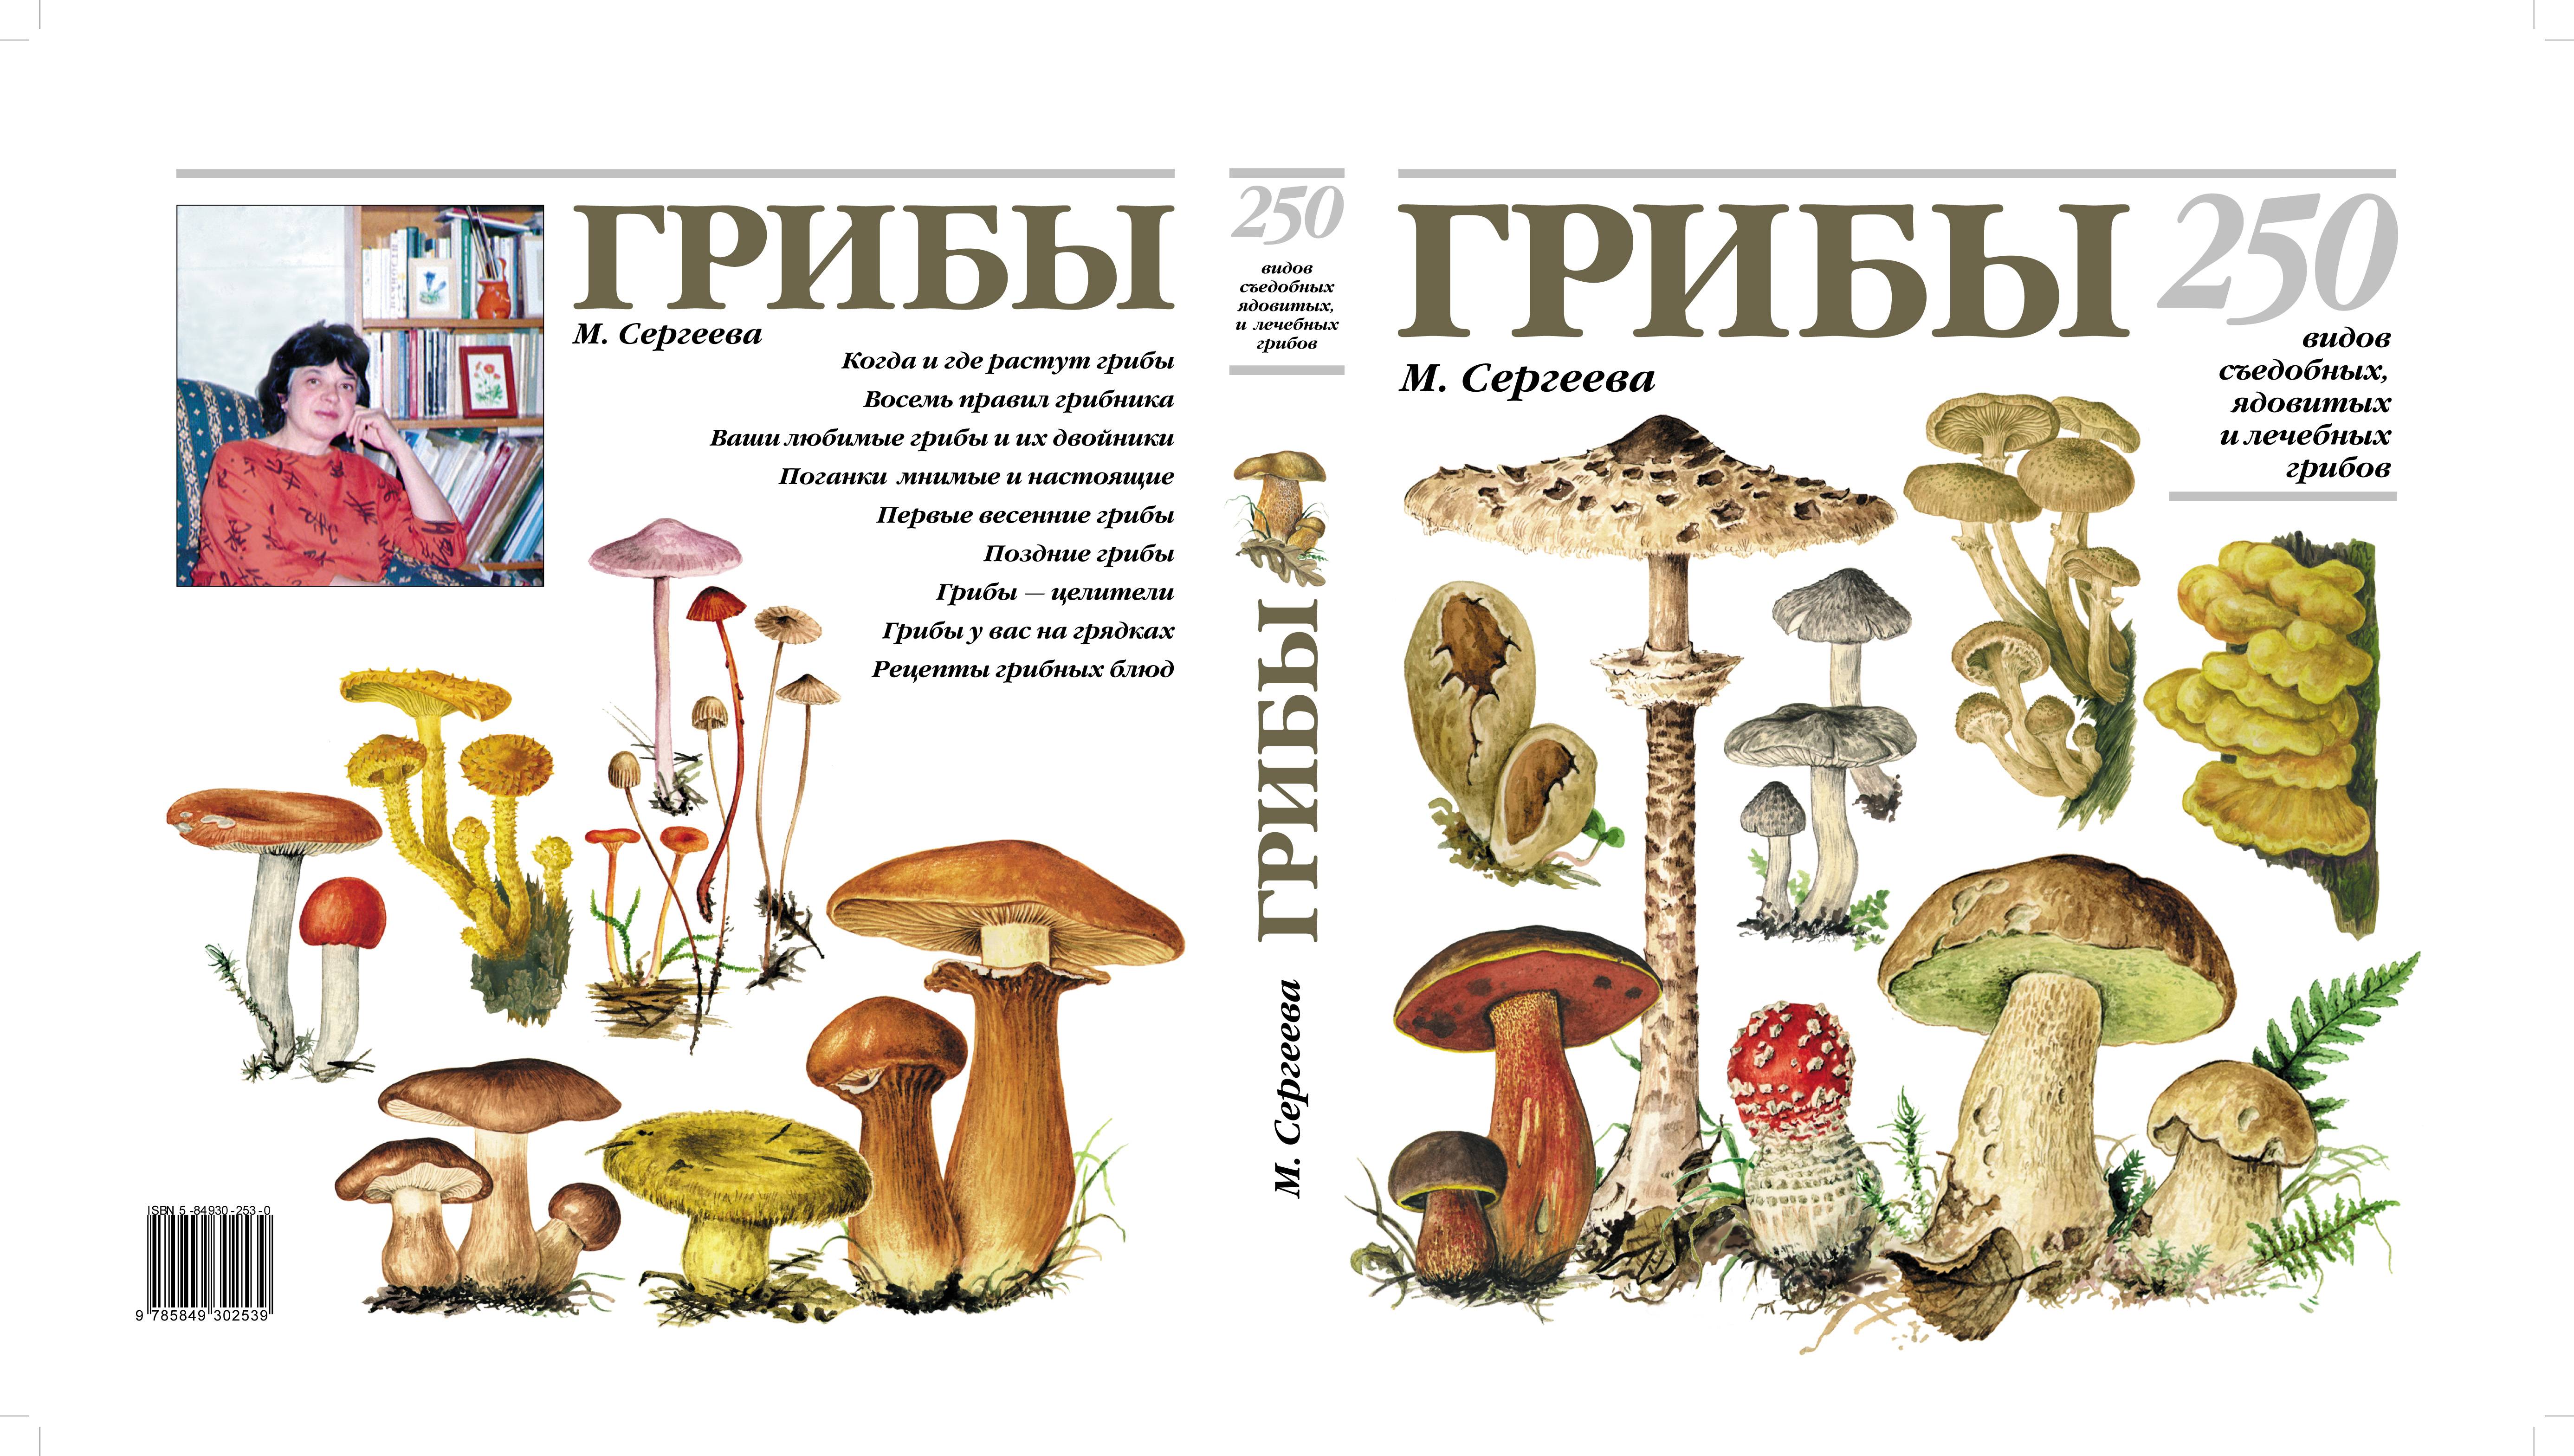 Отравление грибами и ядовитыми растениями